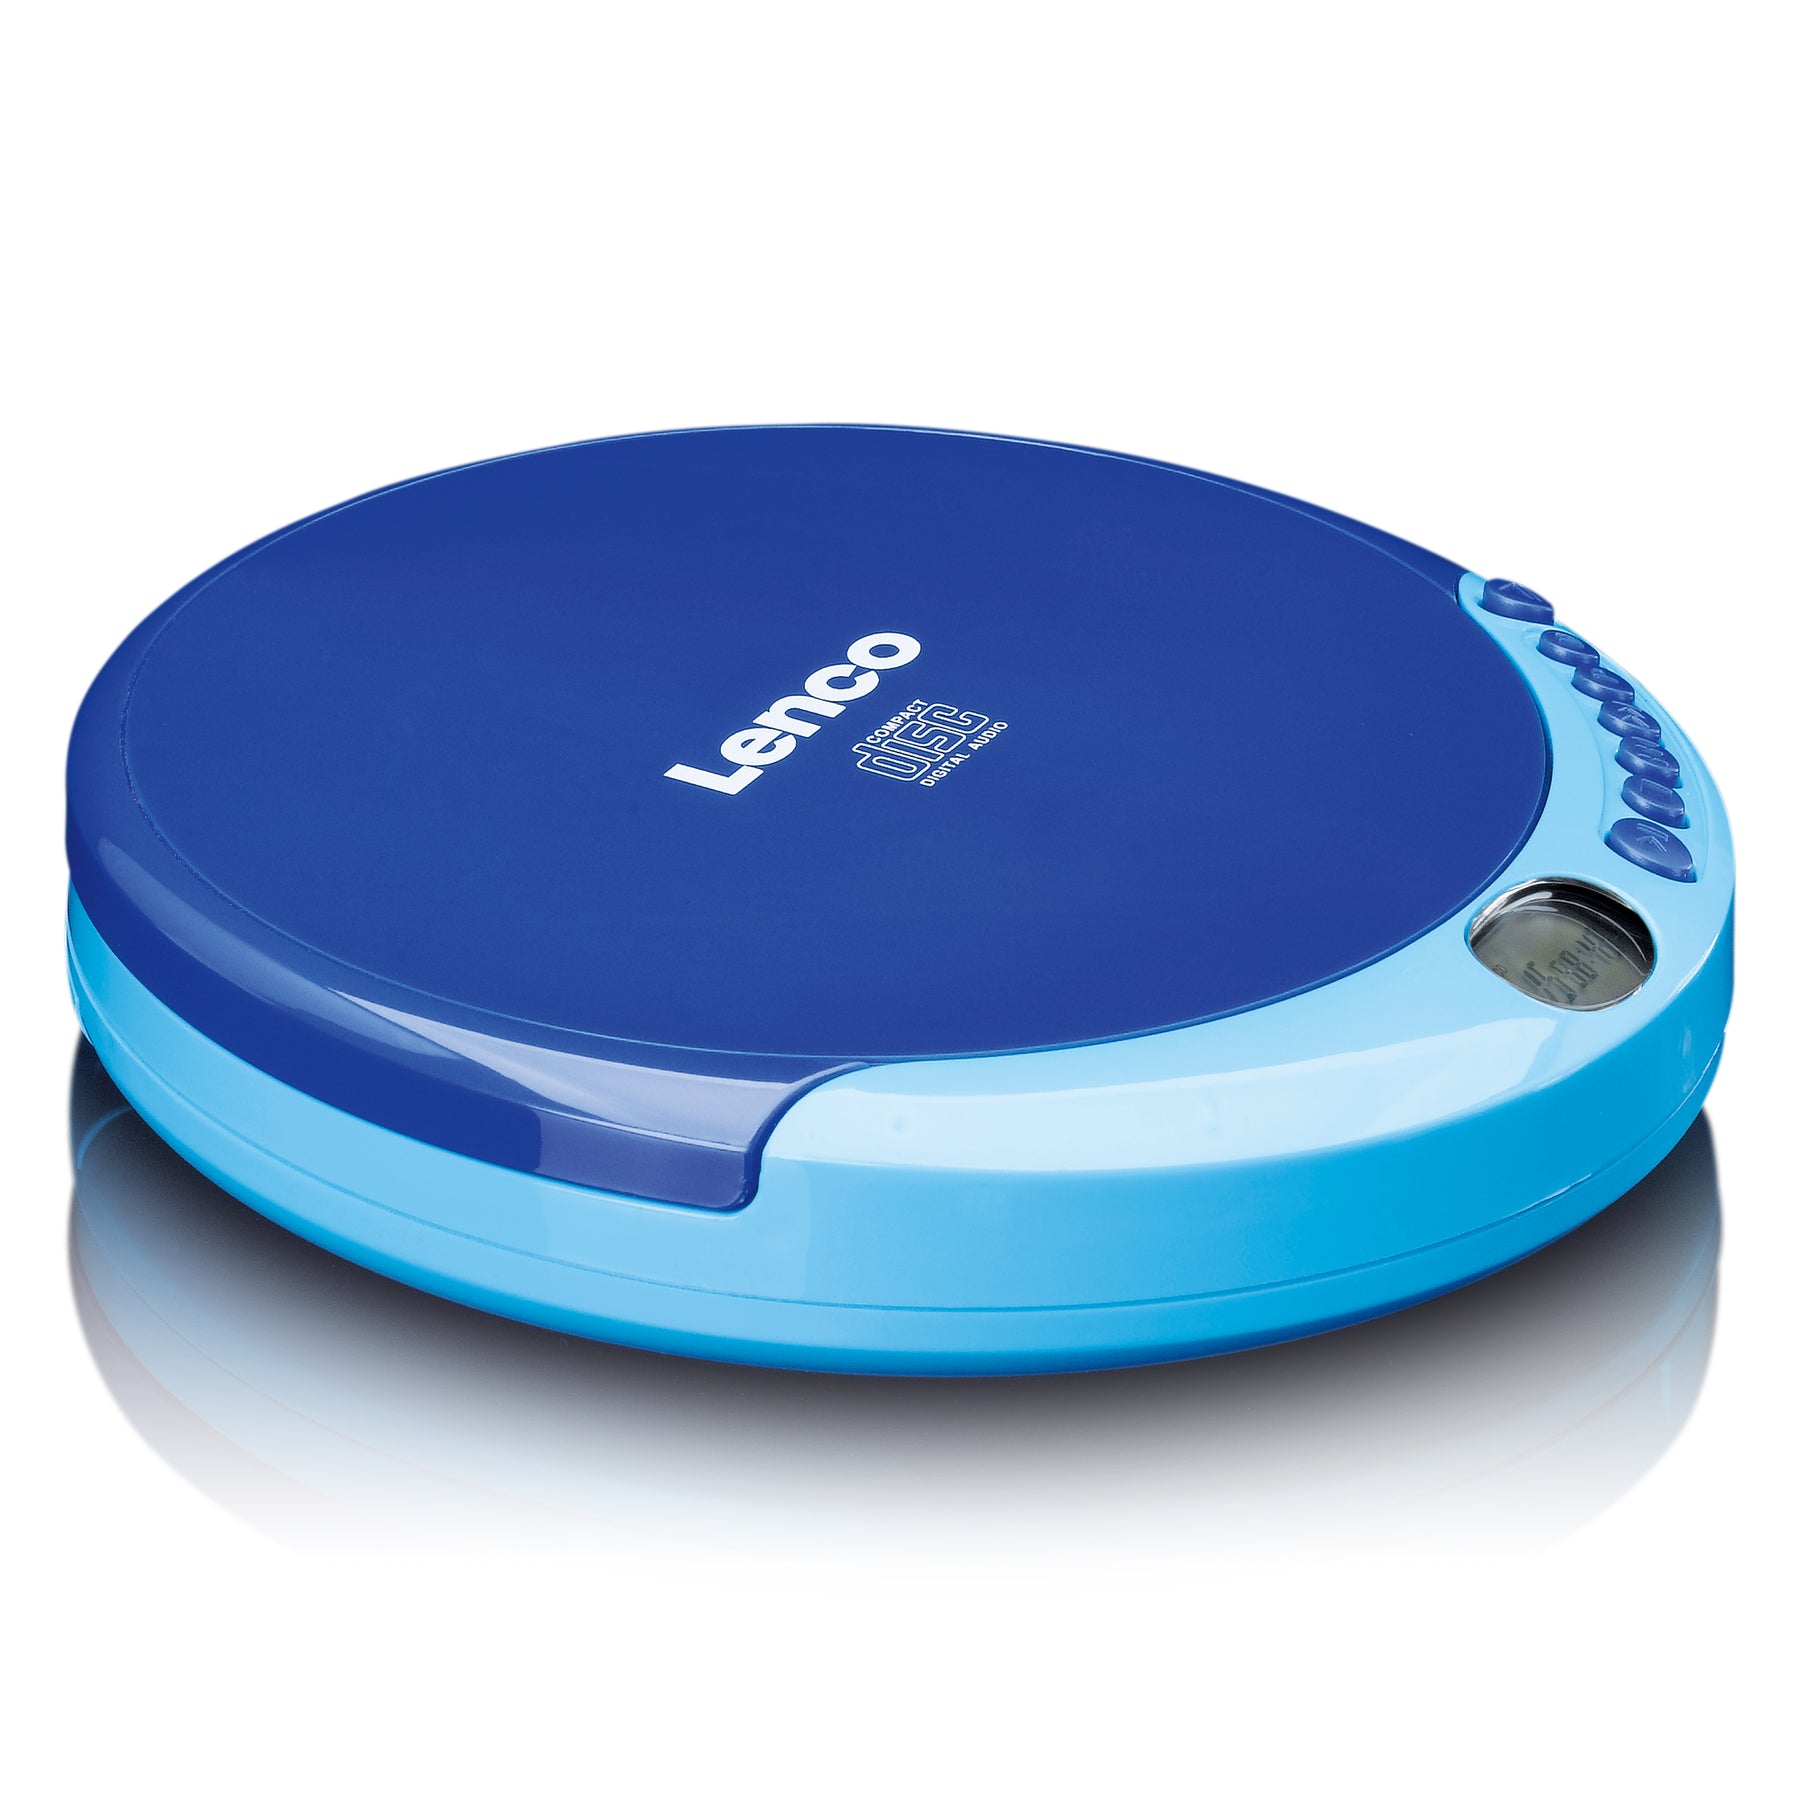 LENCO CD-011BU player - - – Lenco-Catalog CD Portable Blue